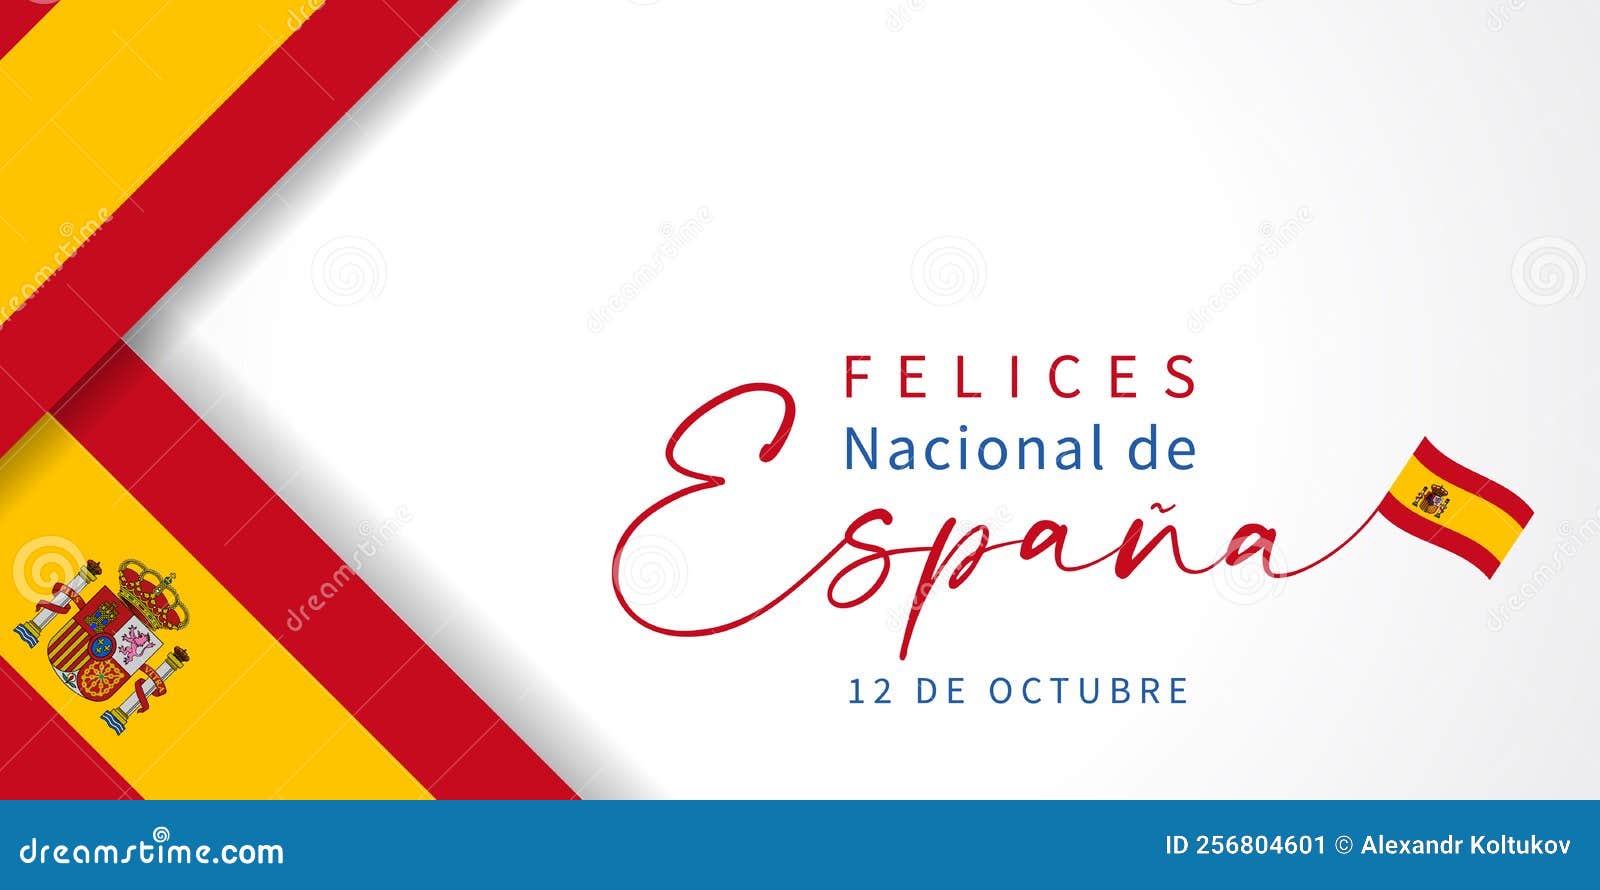 felices nacional de espana flags banner